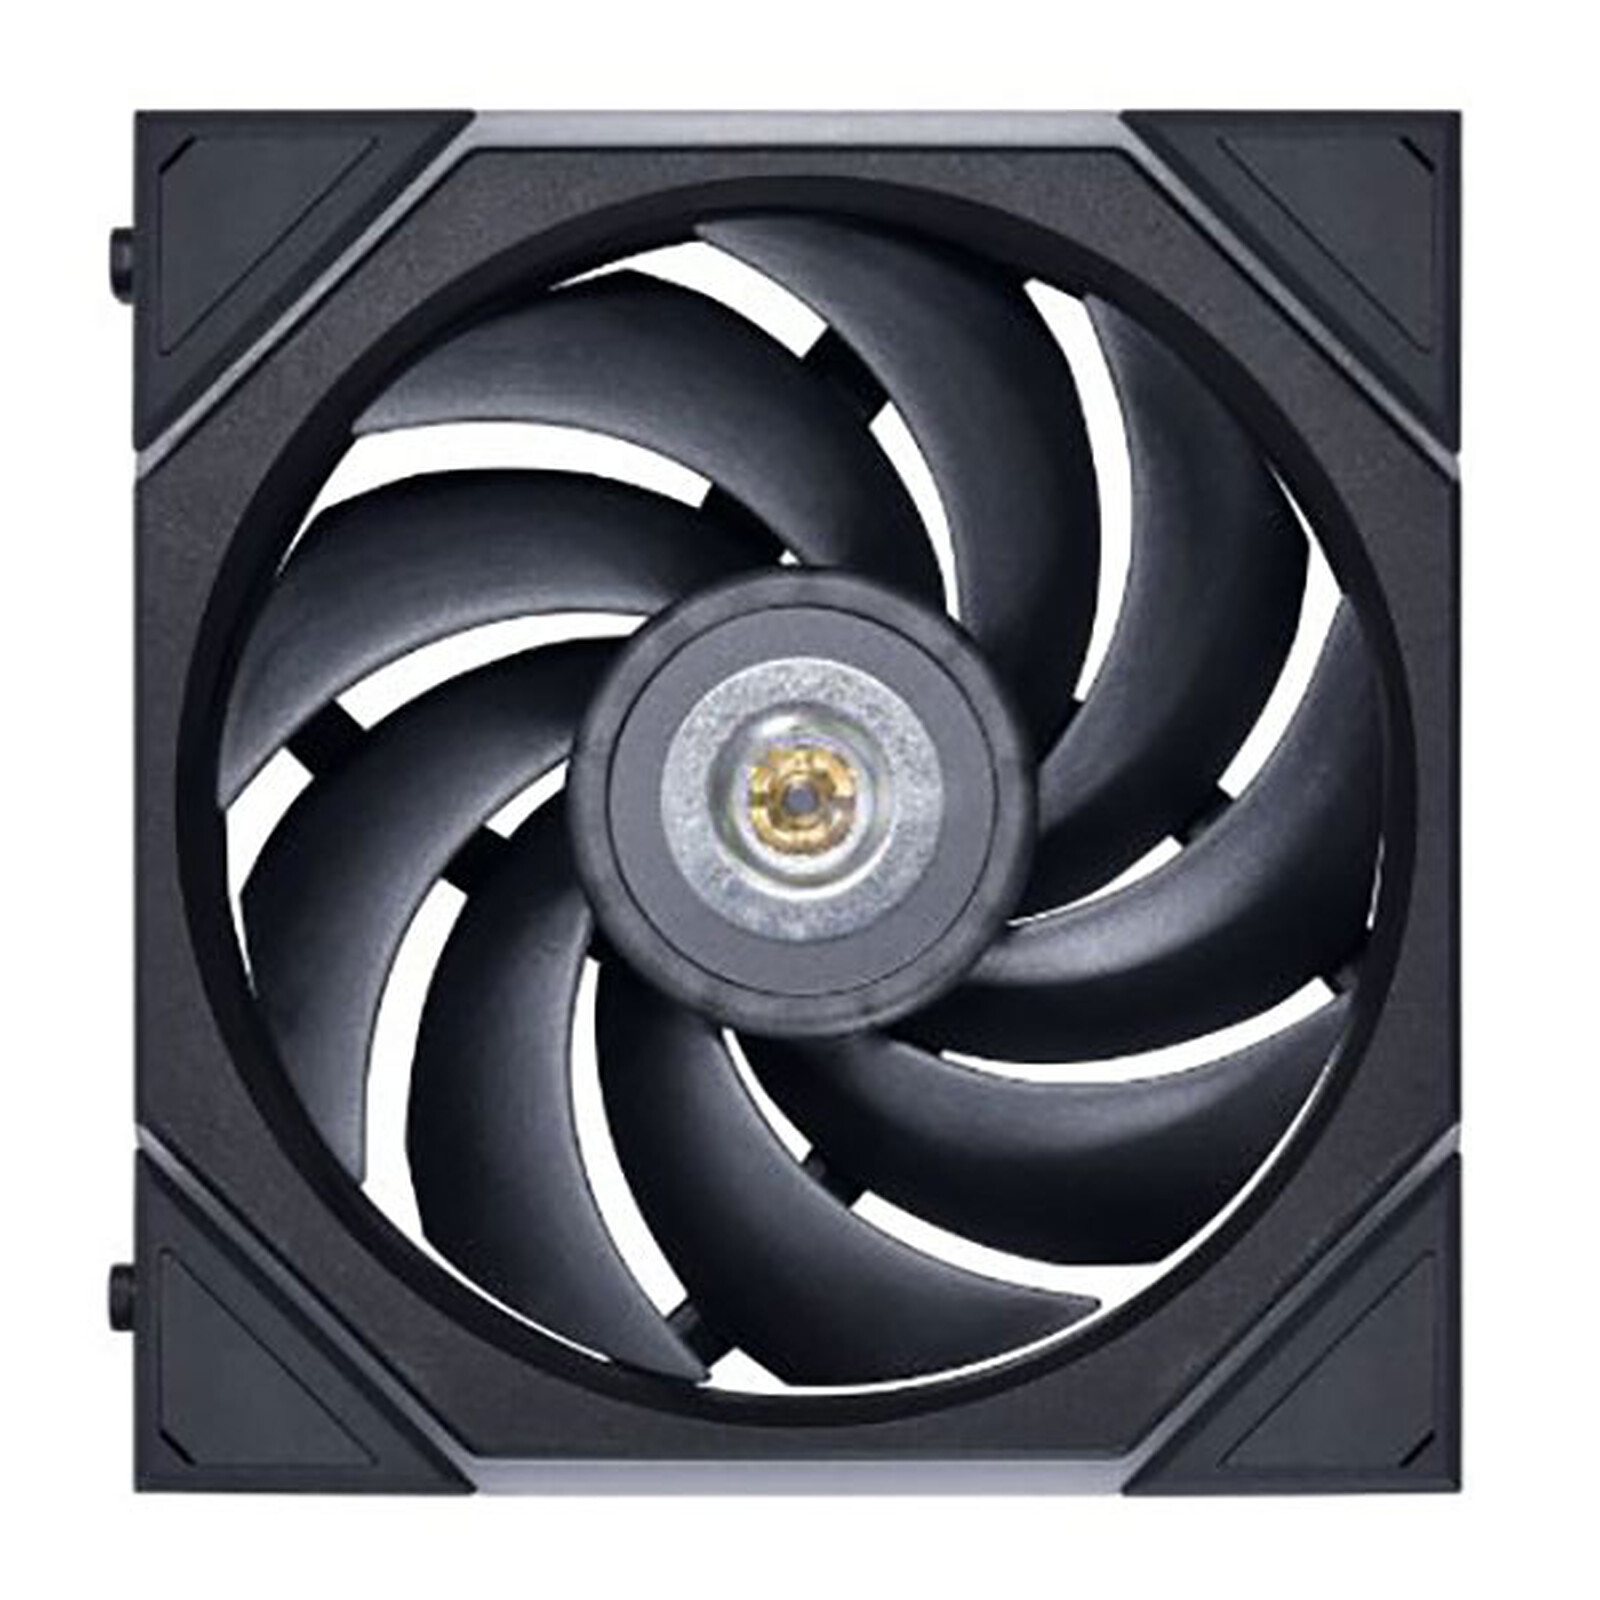 Grille de ventilateur 80 mm - Grille ventilateur PC - Garantie 3 ans LDLC